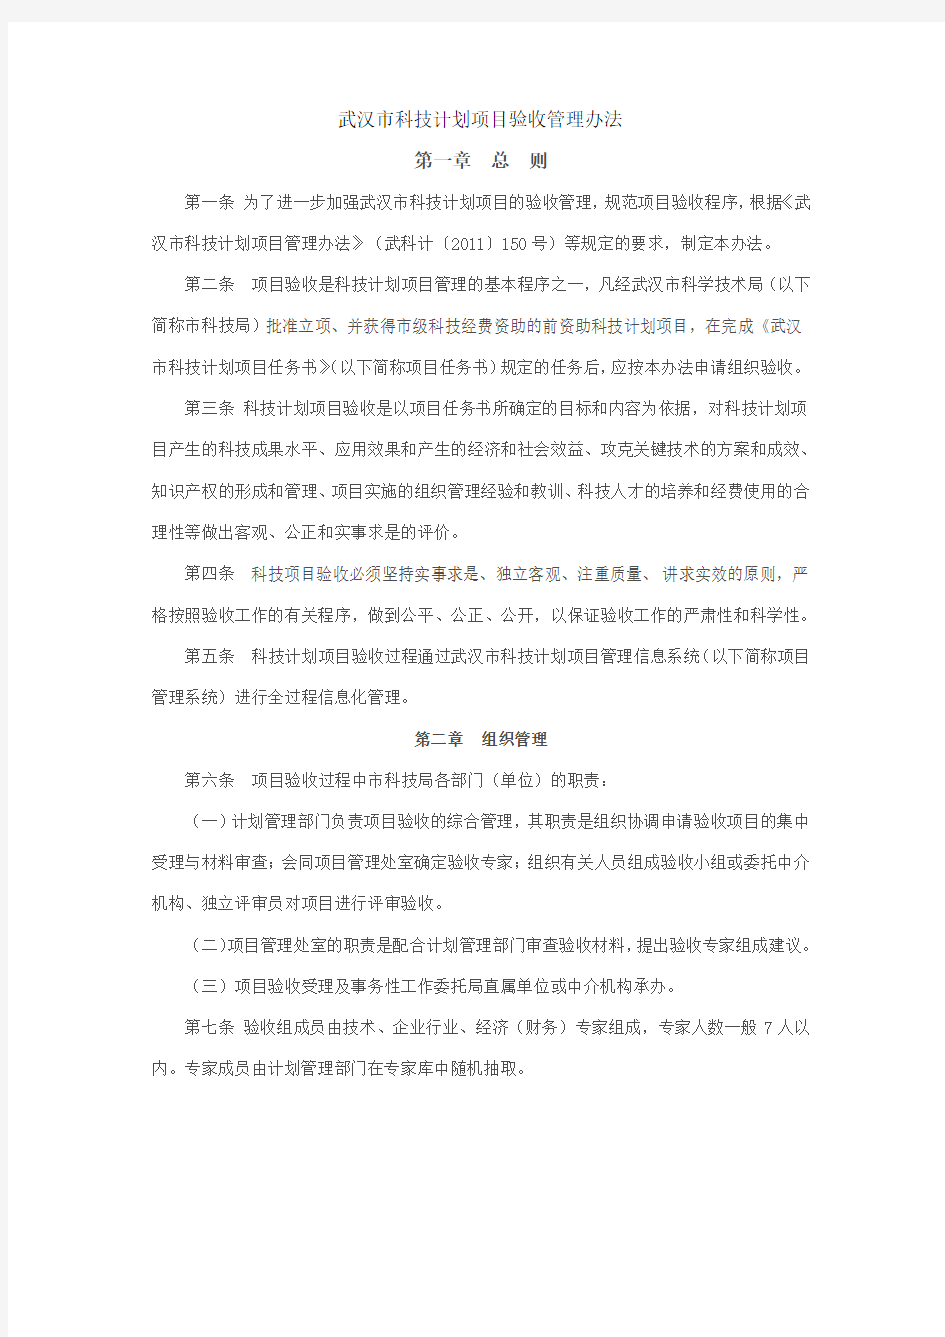 武汉市科技计划项目验收管理办法